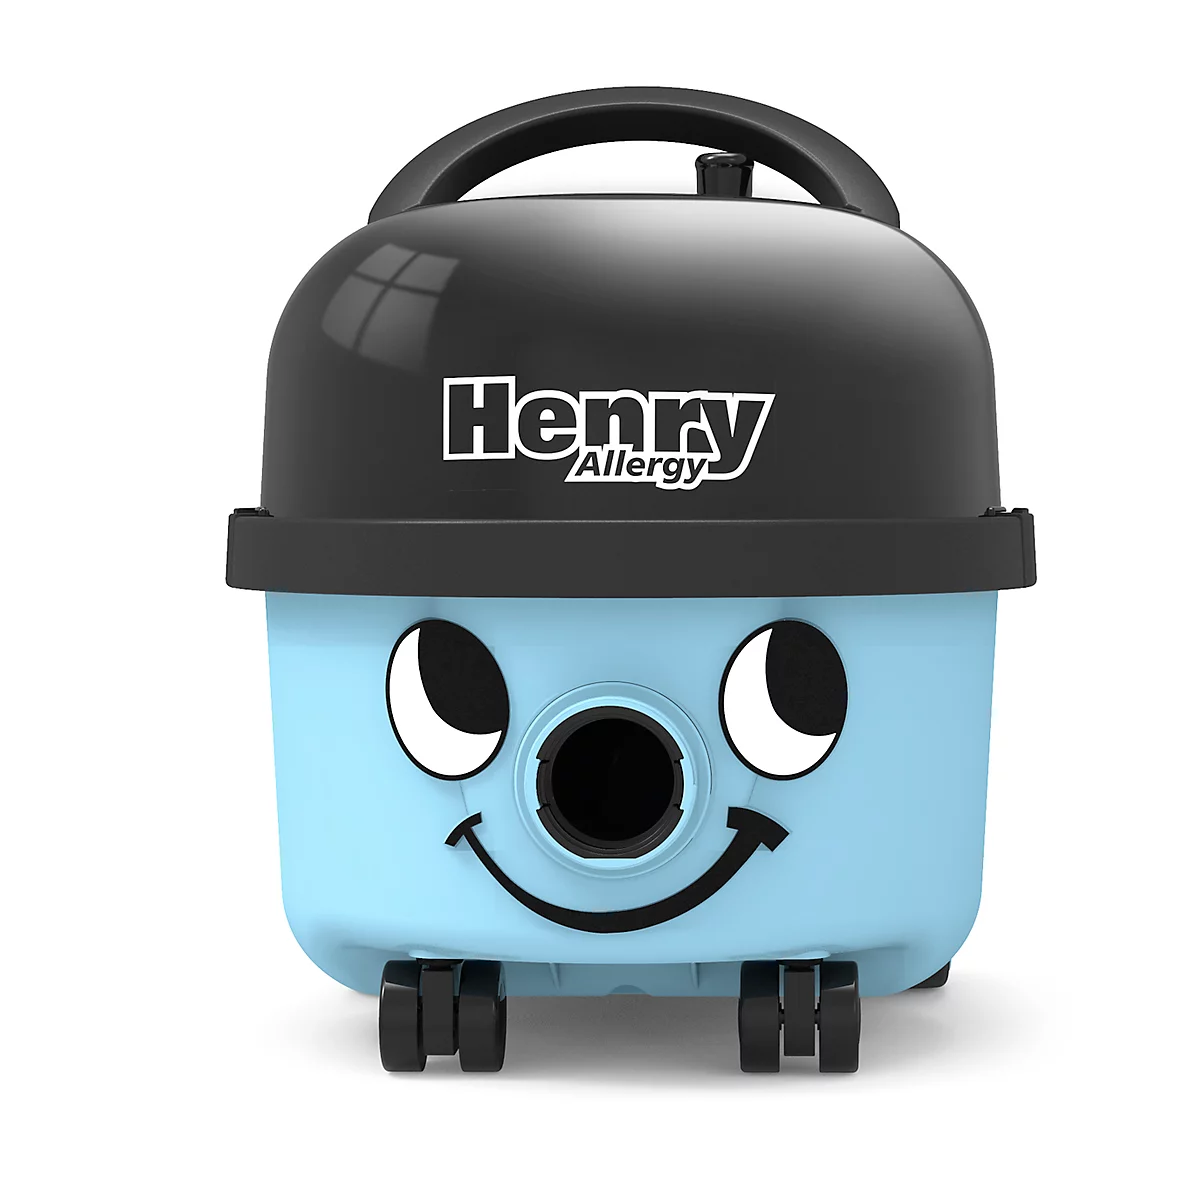 Staubsauger HENRY Allergy, 620 W, 3-Stufen-Filter, 6 l Volumen, mit Zubehörhalterung